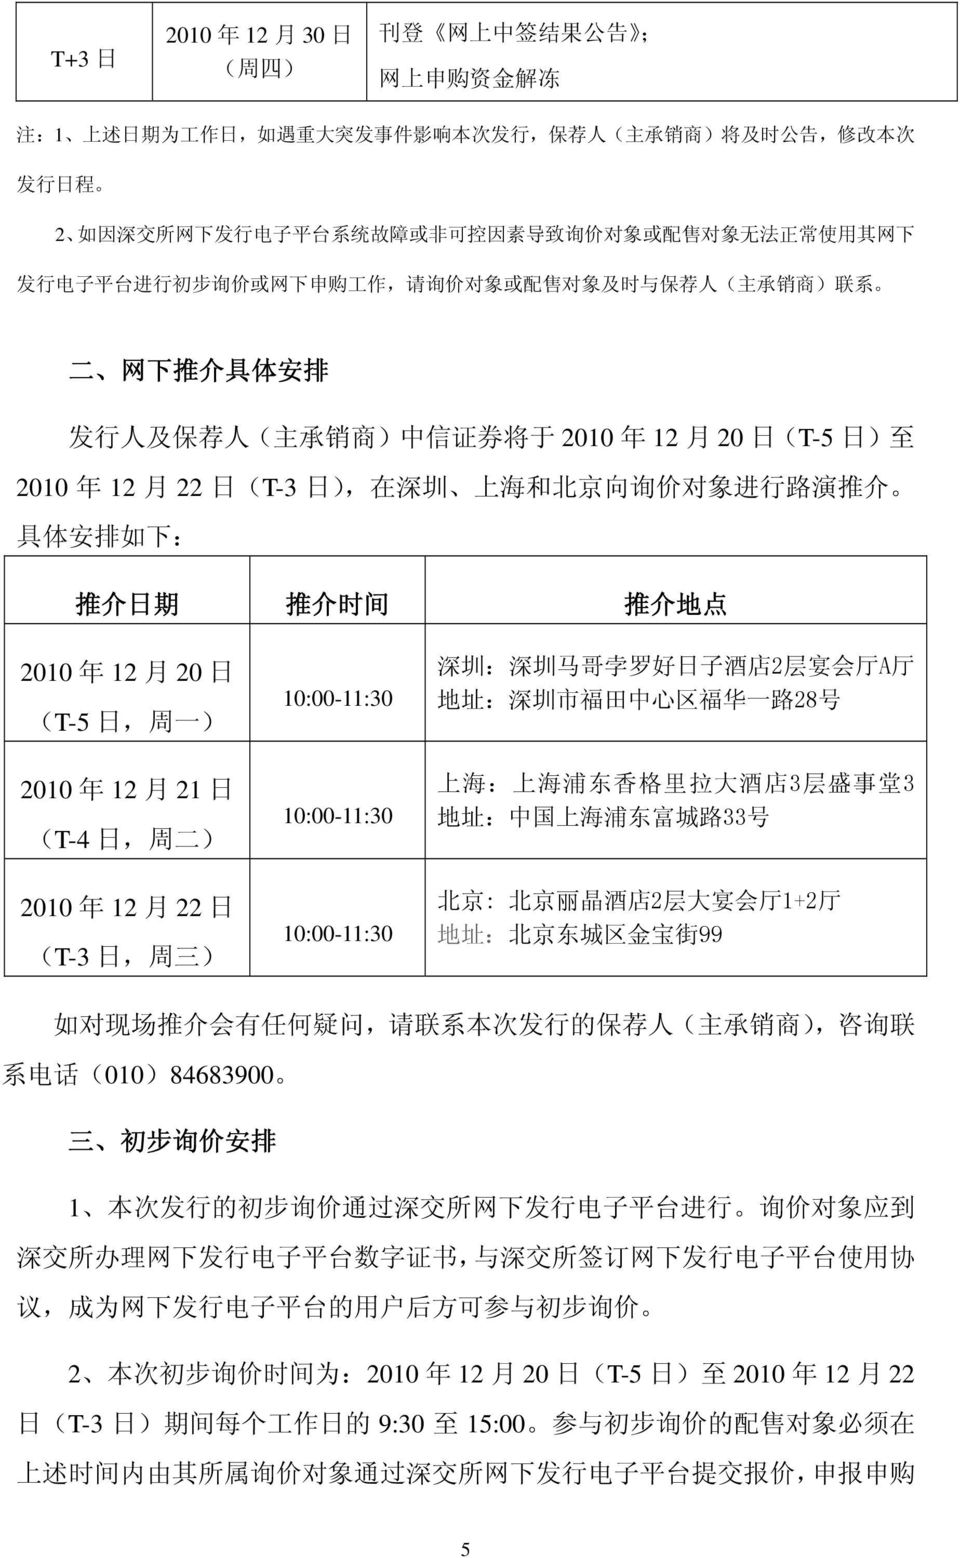 2010 年 12 月 20 日 (T-5 日 ) 至 2010 年 12 月 22 日 (T-3 日 ), 在 深 圳 上 海 和 北 京 向 询 价 对 象 进 行 路 演 推 介 具 体 安 排 如 下 : 推 介 日 期 推 介 时 间 推 介 地 点 2010 年 12 月 20 日 (T-5 日, 周 一 ) 2010 年 12 月 21 日 (T-4 日, 周 二 ) 2010 年